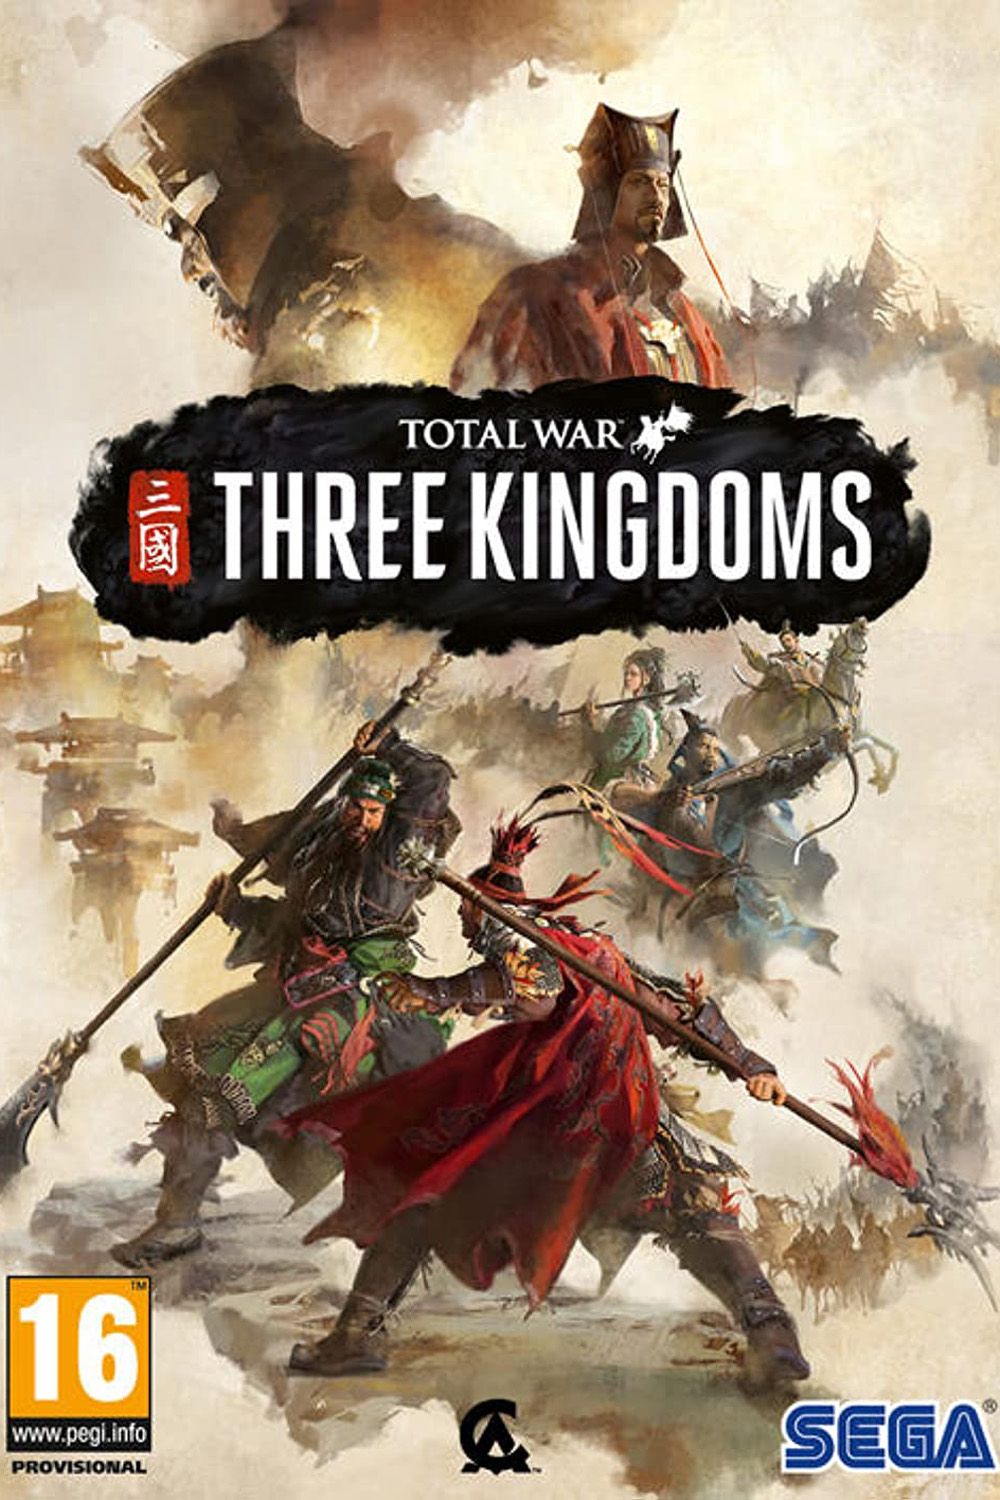 Total War Three Kingdoms imdb